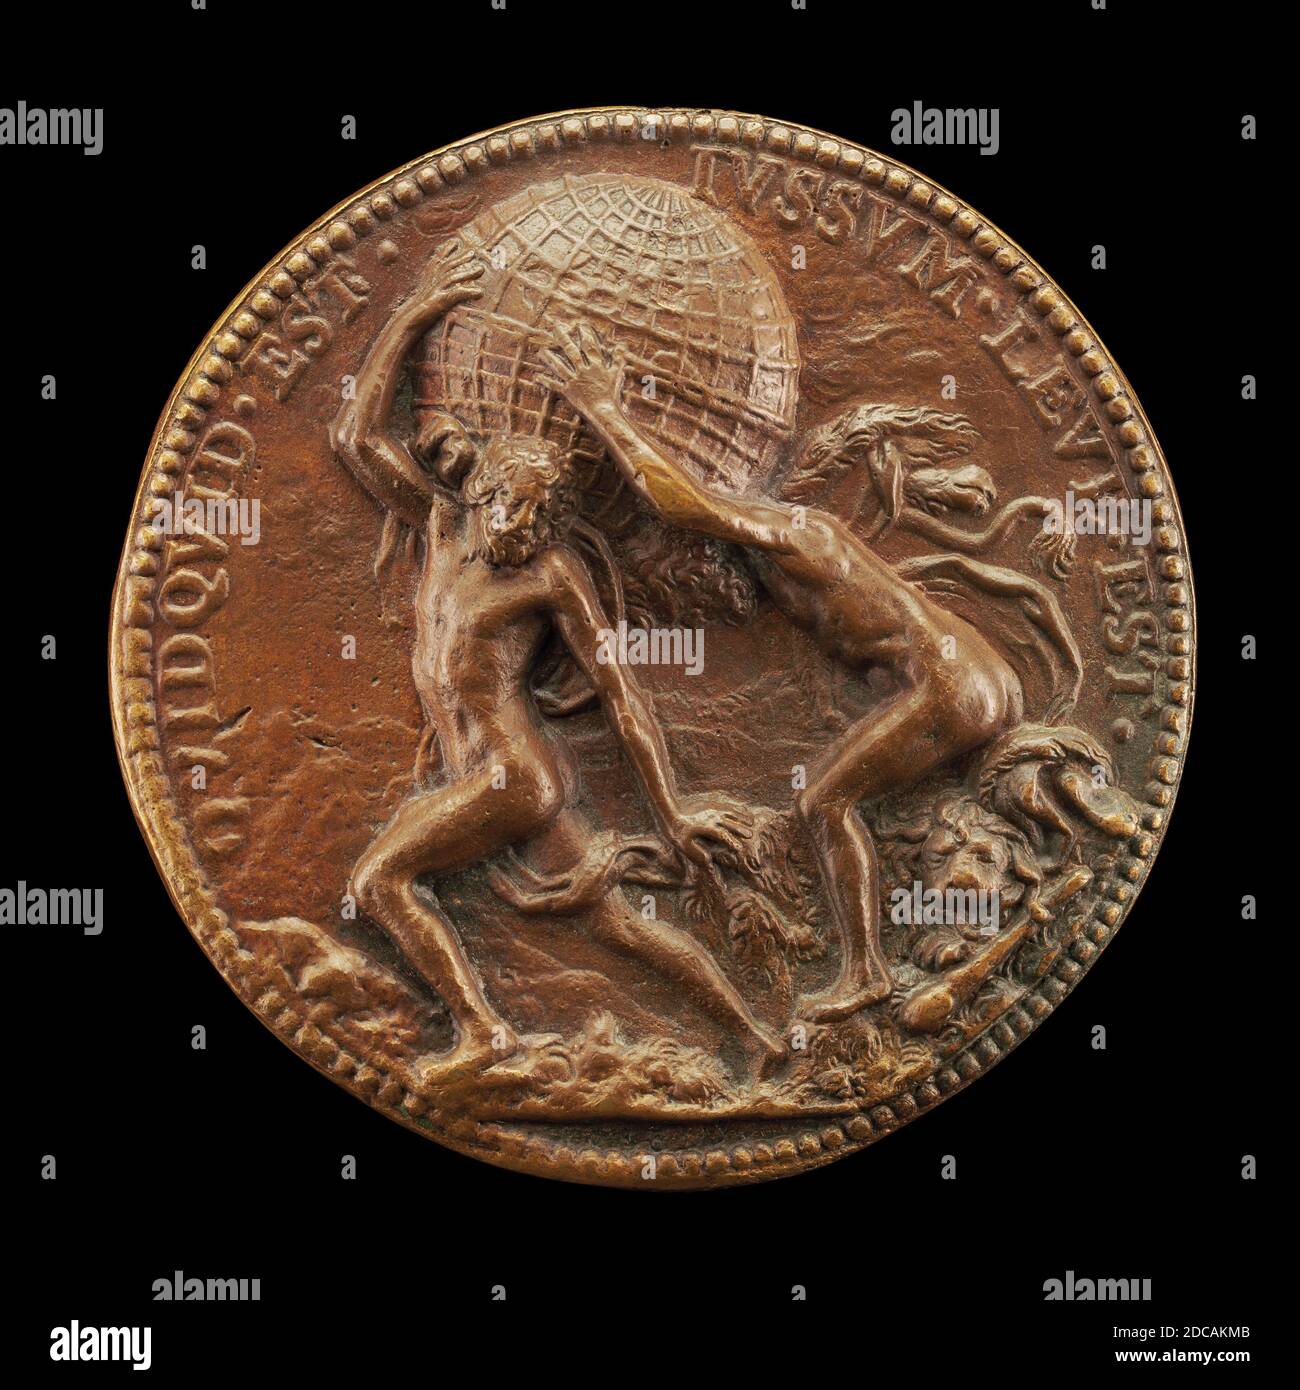 Jean Warin, (Medaillengewinner), Flämisch, 1607 - 1672, Hercules Helping Atlas to Bear the Globe, 1629, Bronze, insgesamt (Durchmesser): 6.57 cm (2 9/16 in.), Bruttogewicht: 117.07 gr (0.258 lb.), Achse: 12:00 Stockfoto